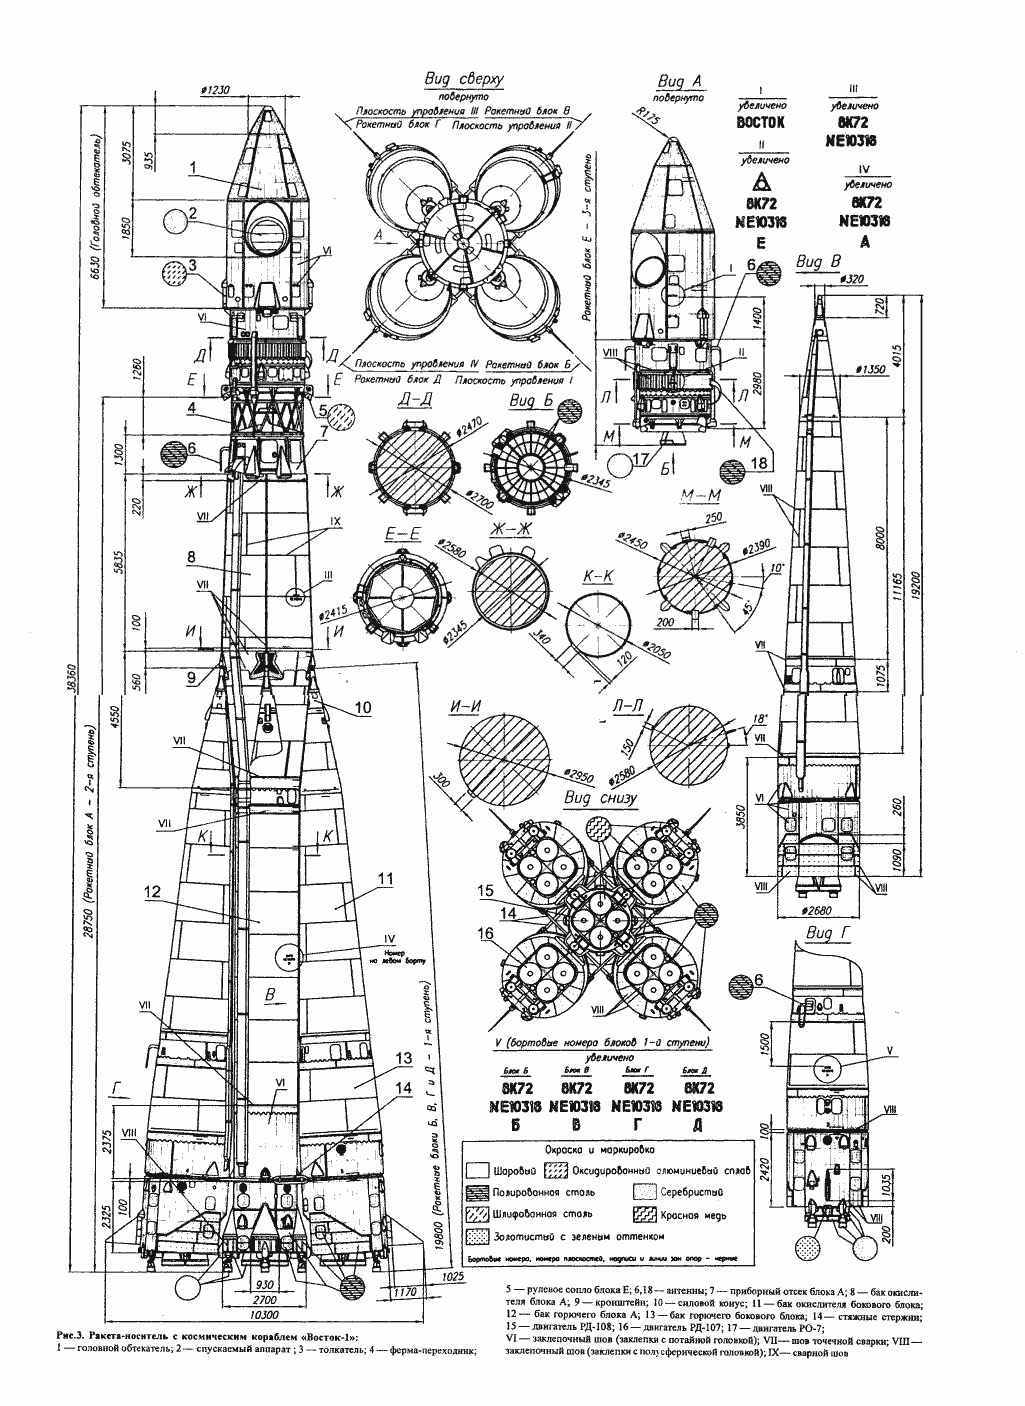 Vostok rocket blueprint